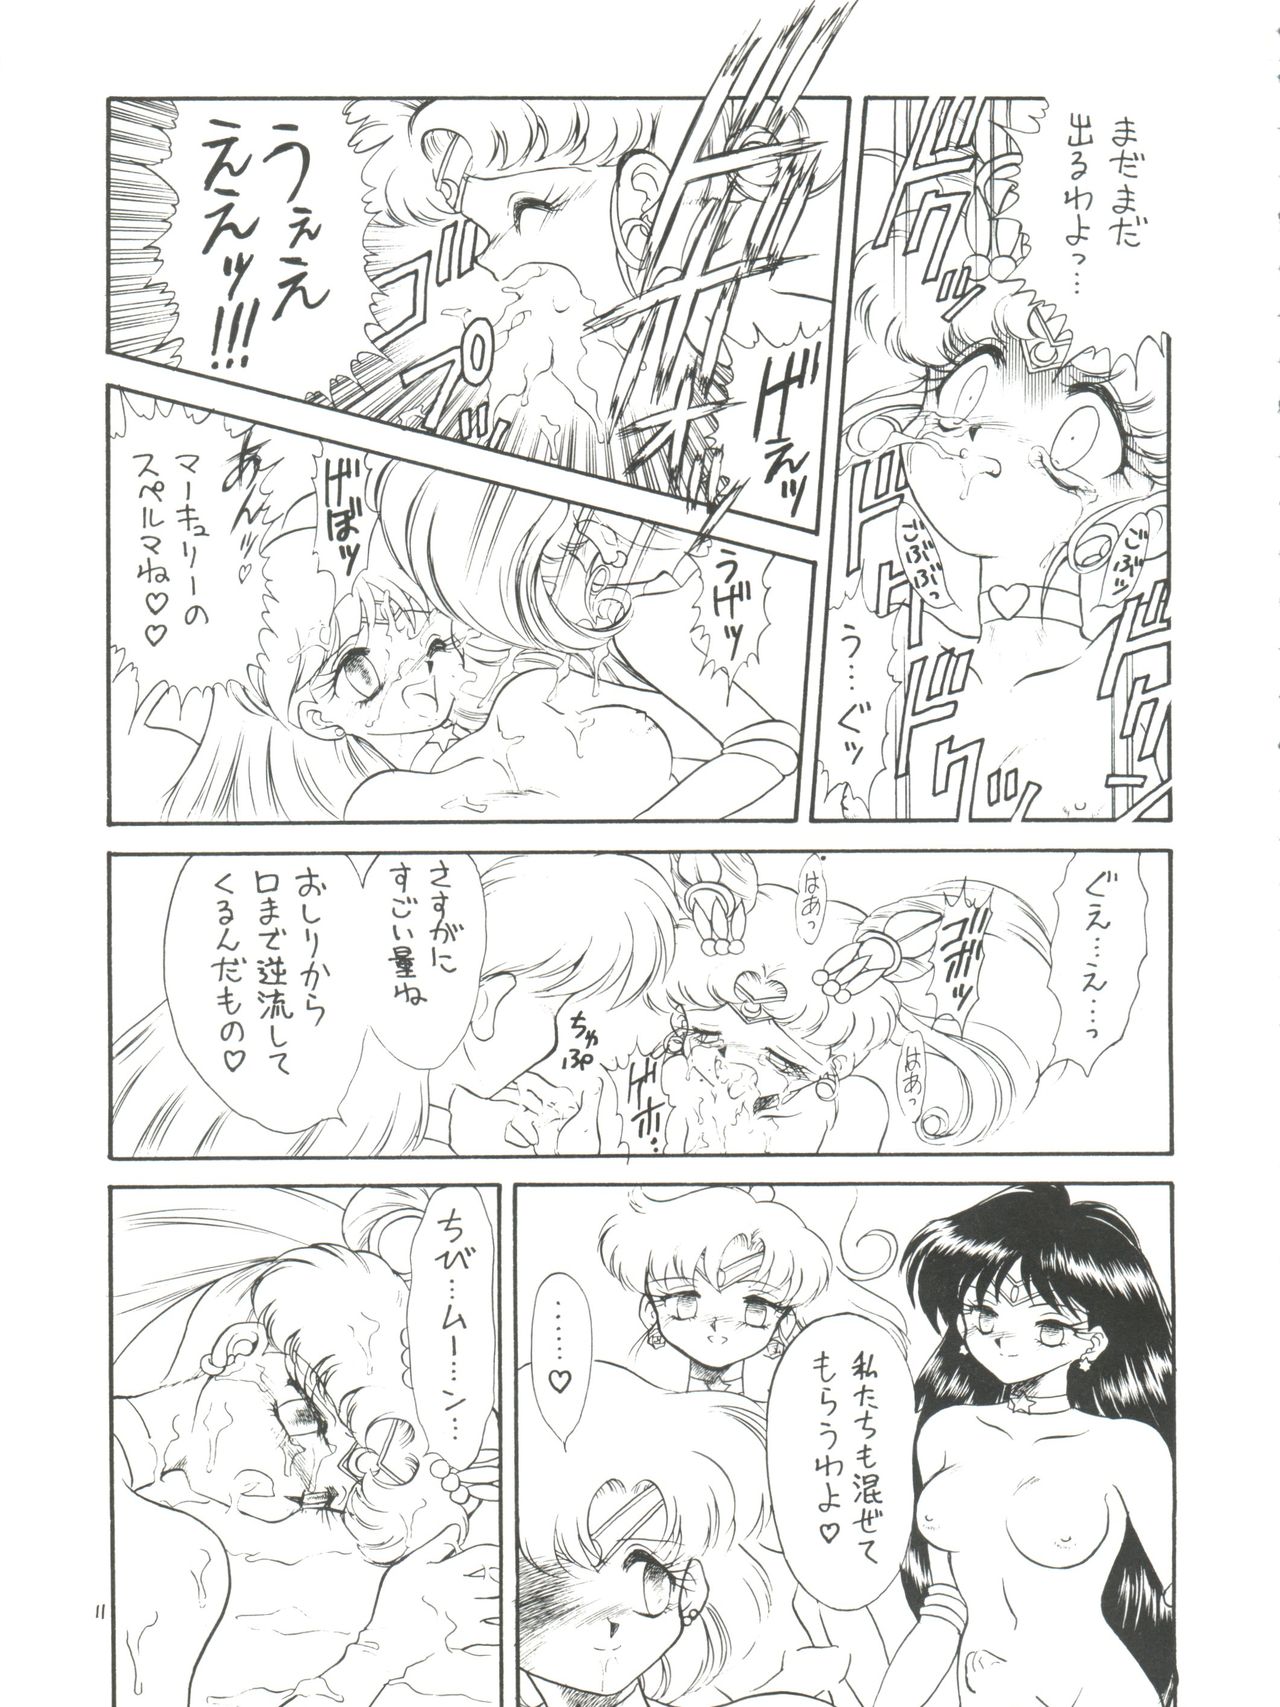 [Momo no Tsubomi (Various)] Lolikko LOVE 4 (Various) page 11 full